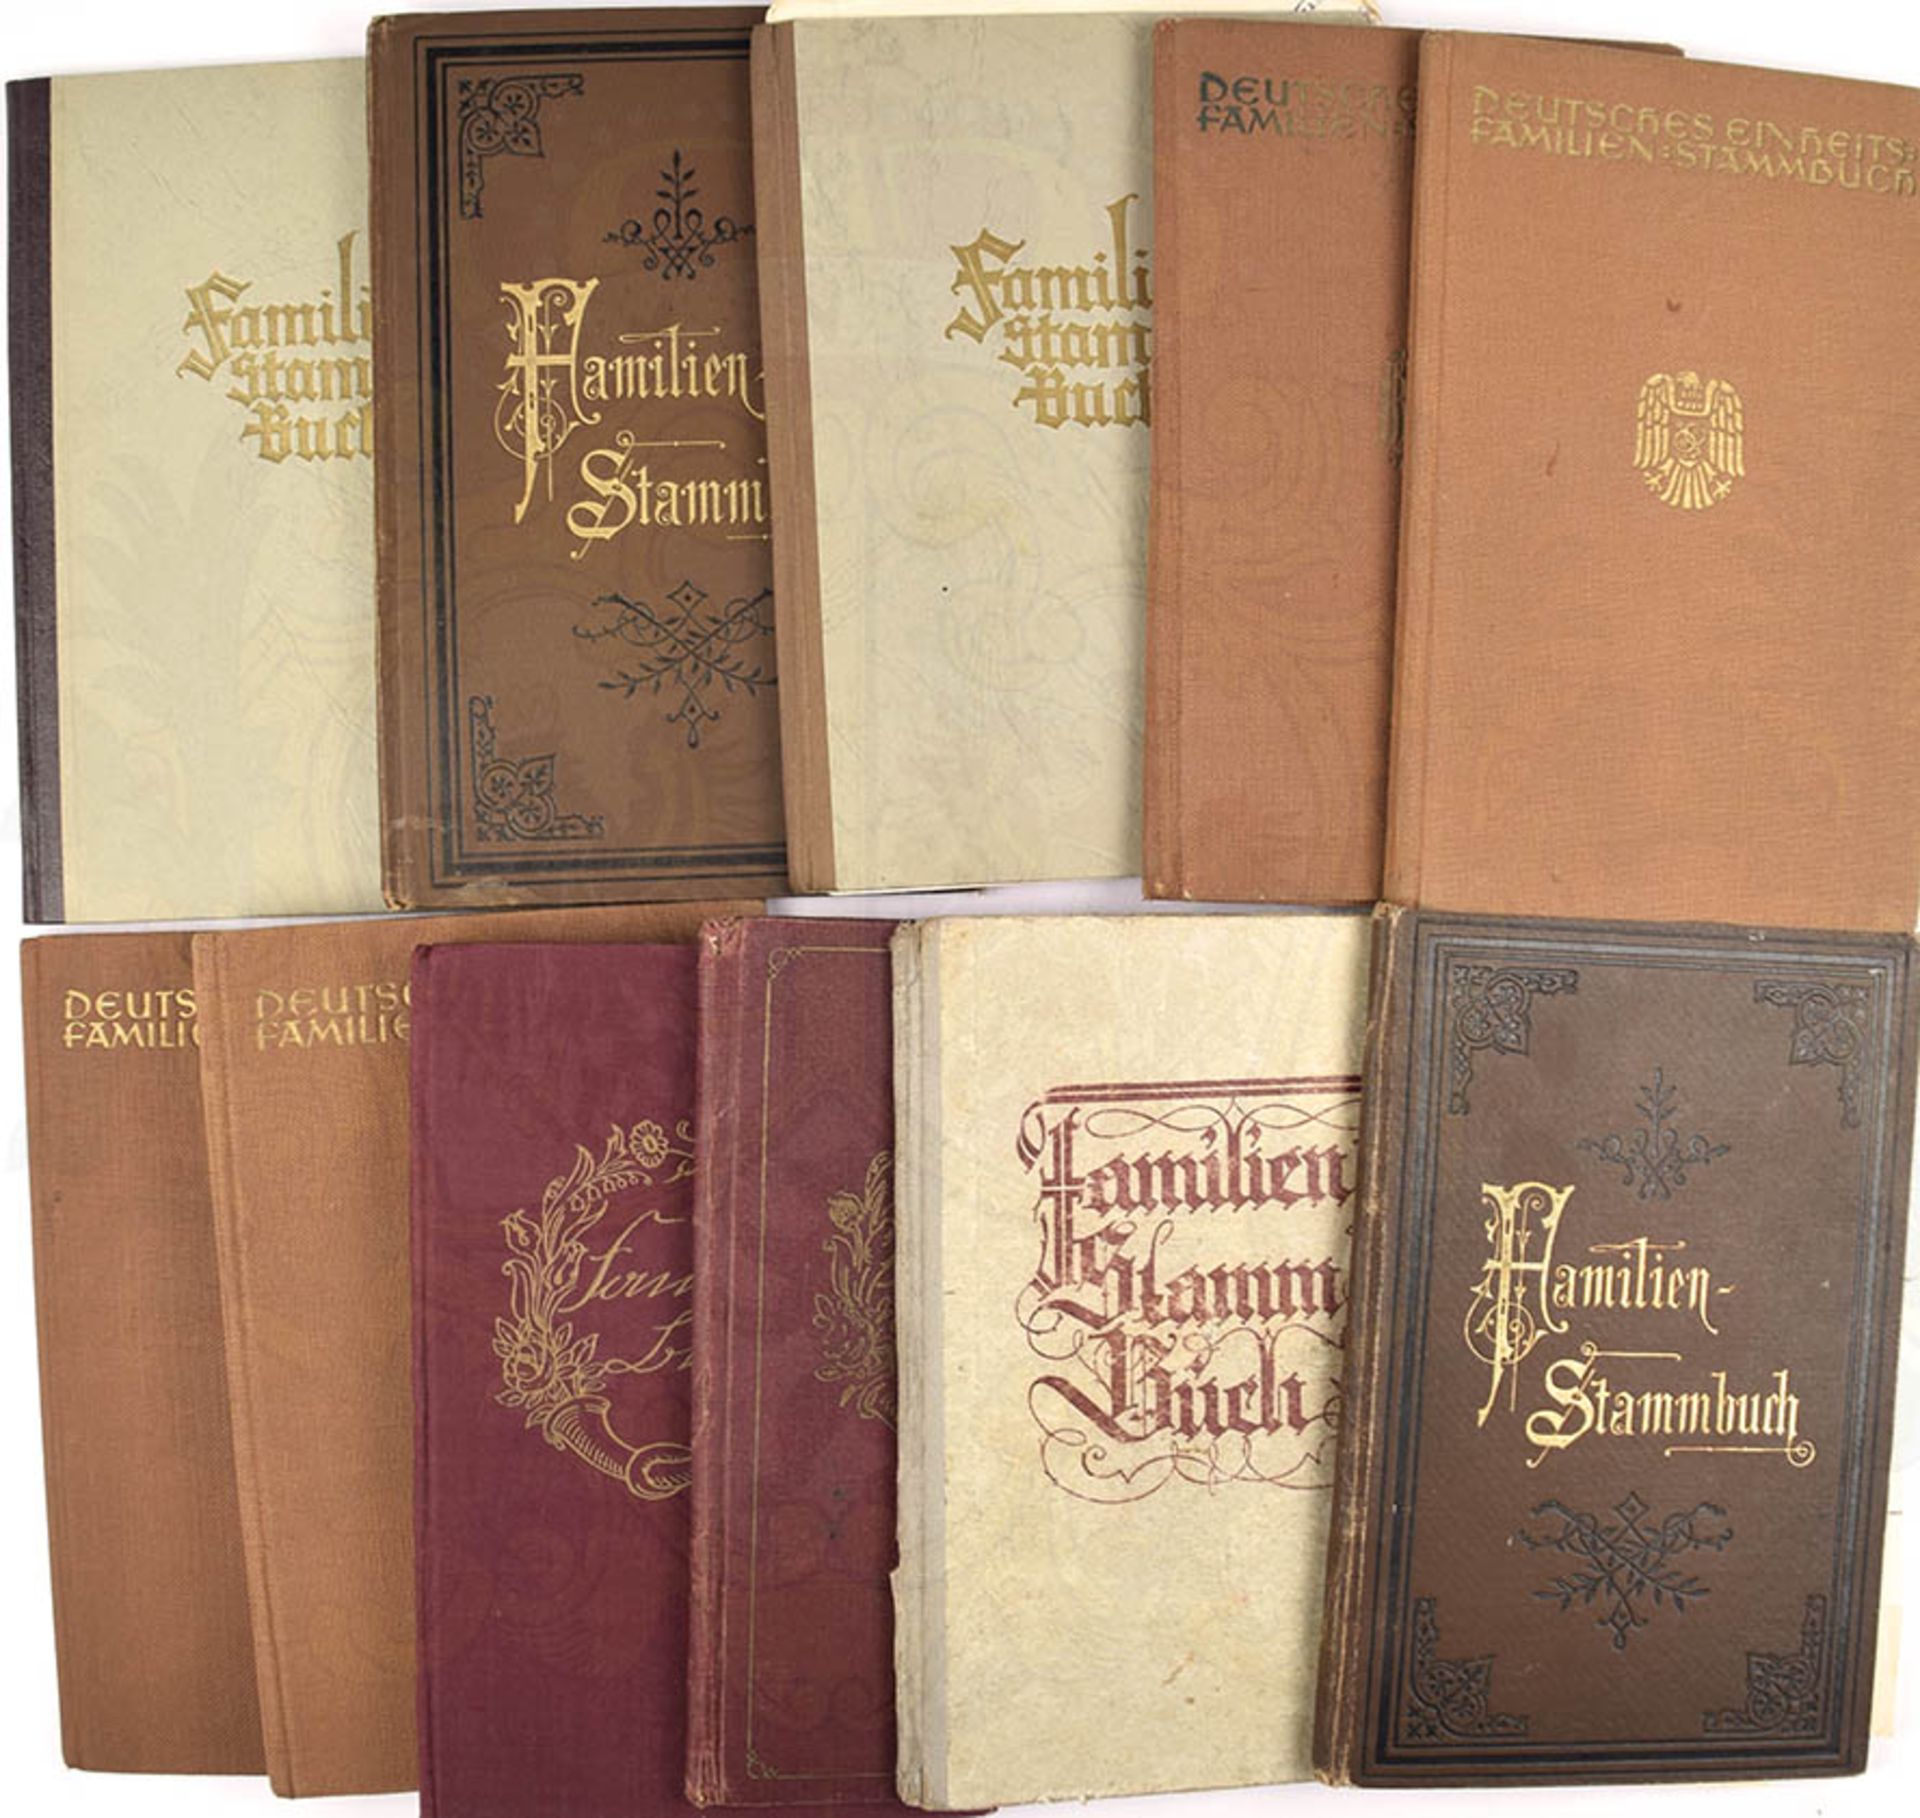 12 FAMILIEN-STAMMBÜCHER, ca. 1898-1954, alle mit Eintragungen, tls. m. beiliegenden Dokumenten,